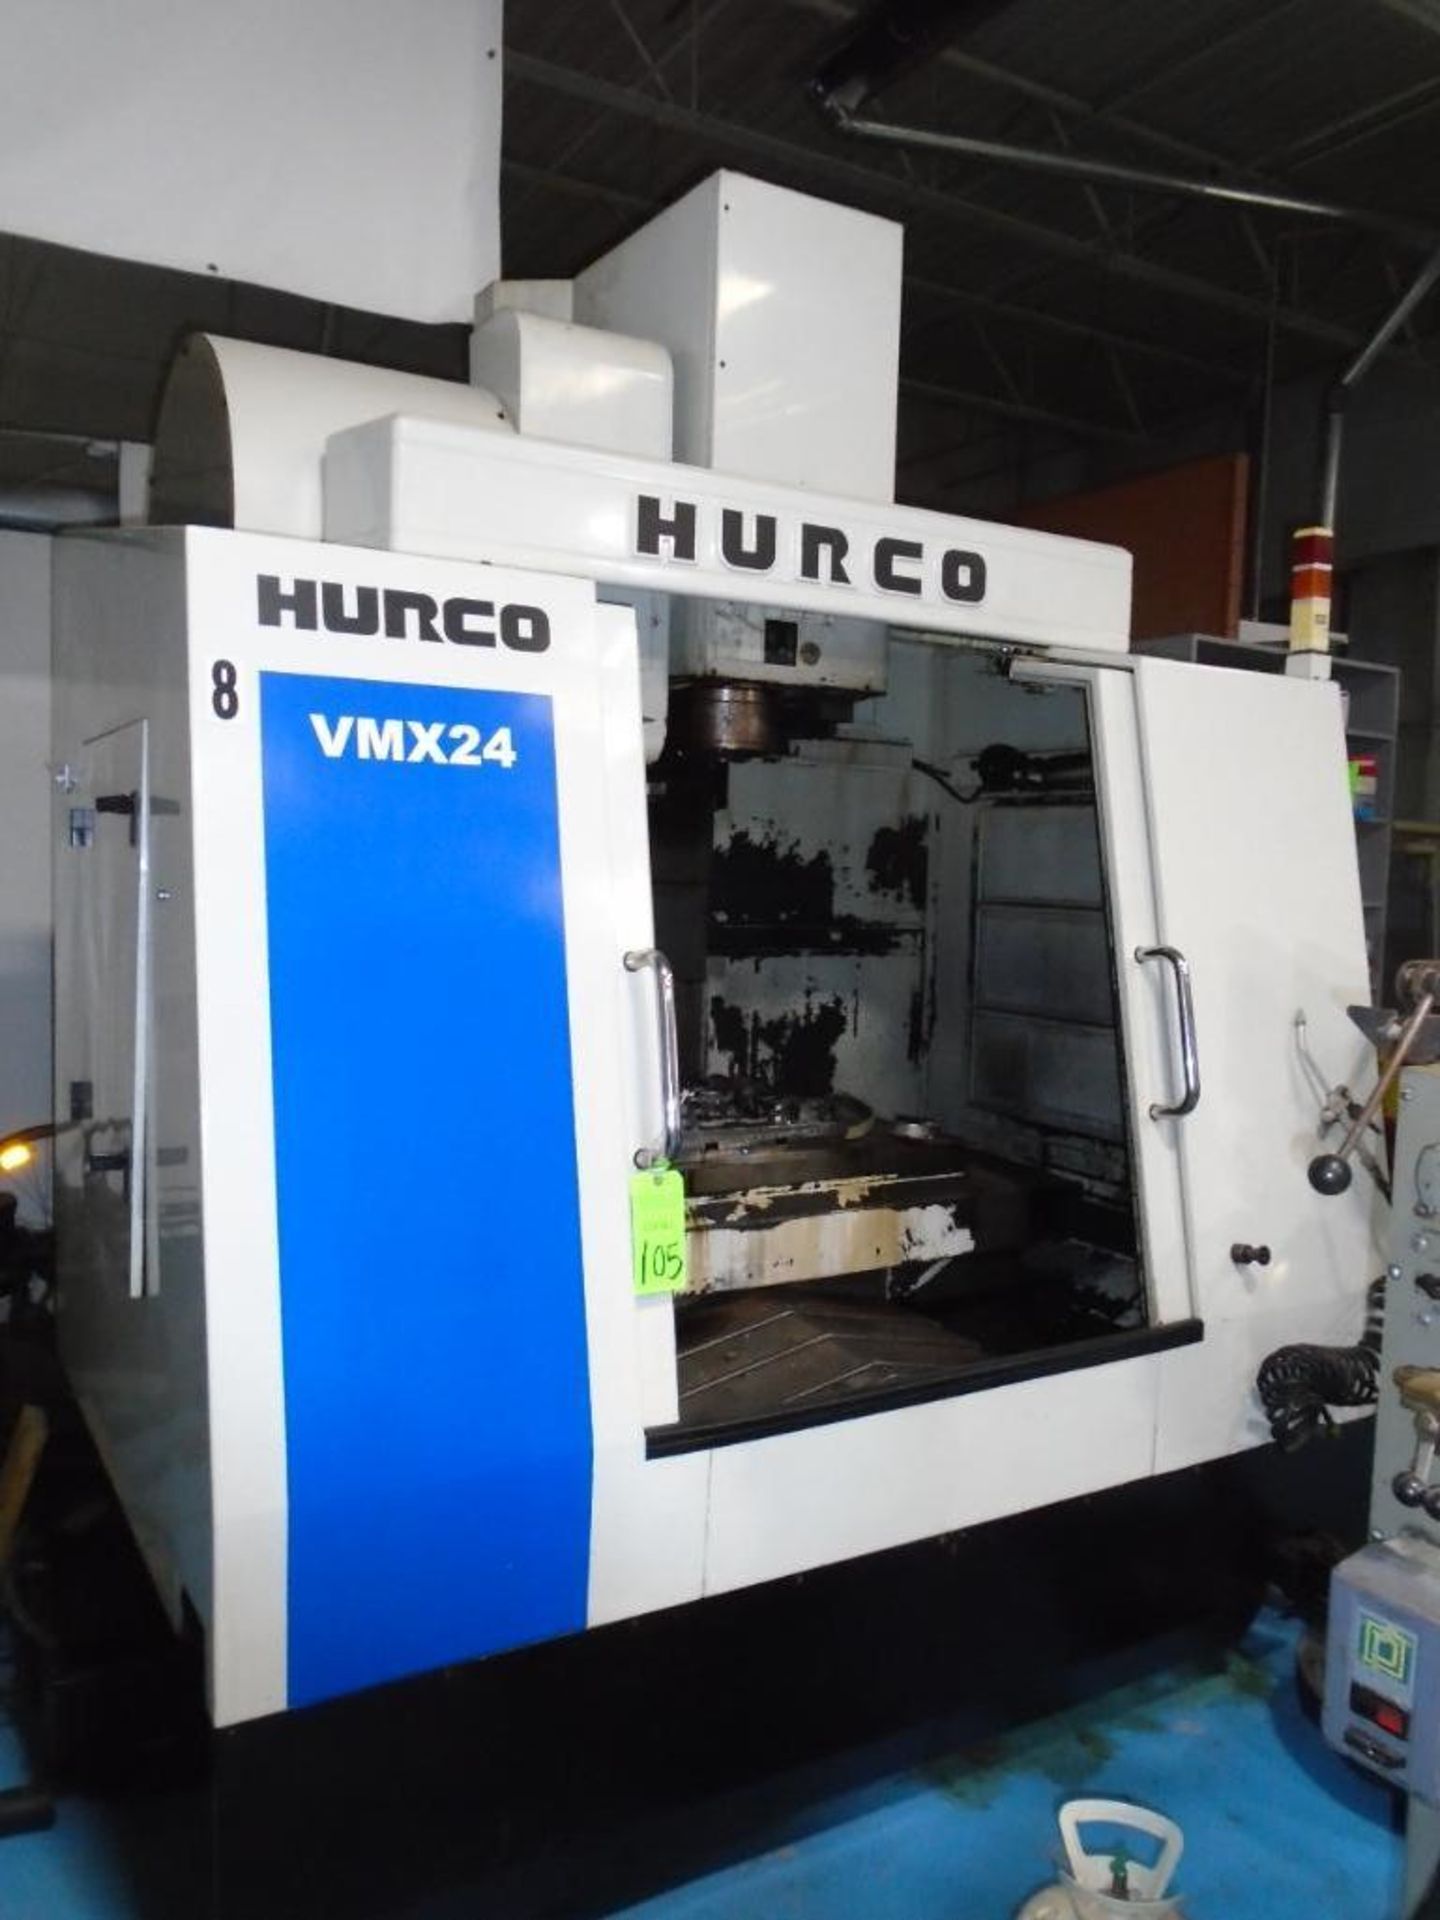 Hurco VMX24 CNC Lathe